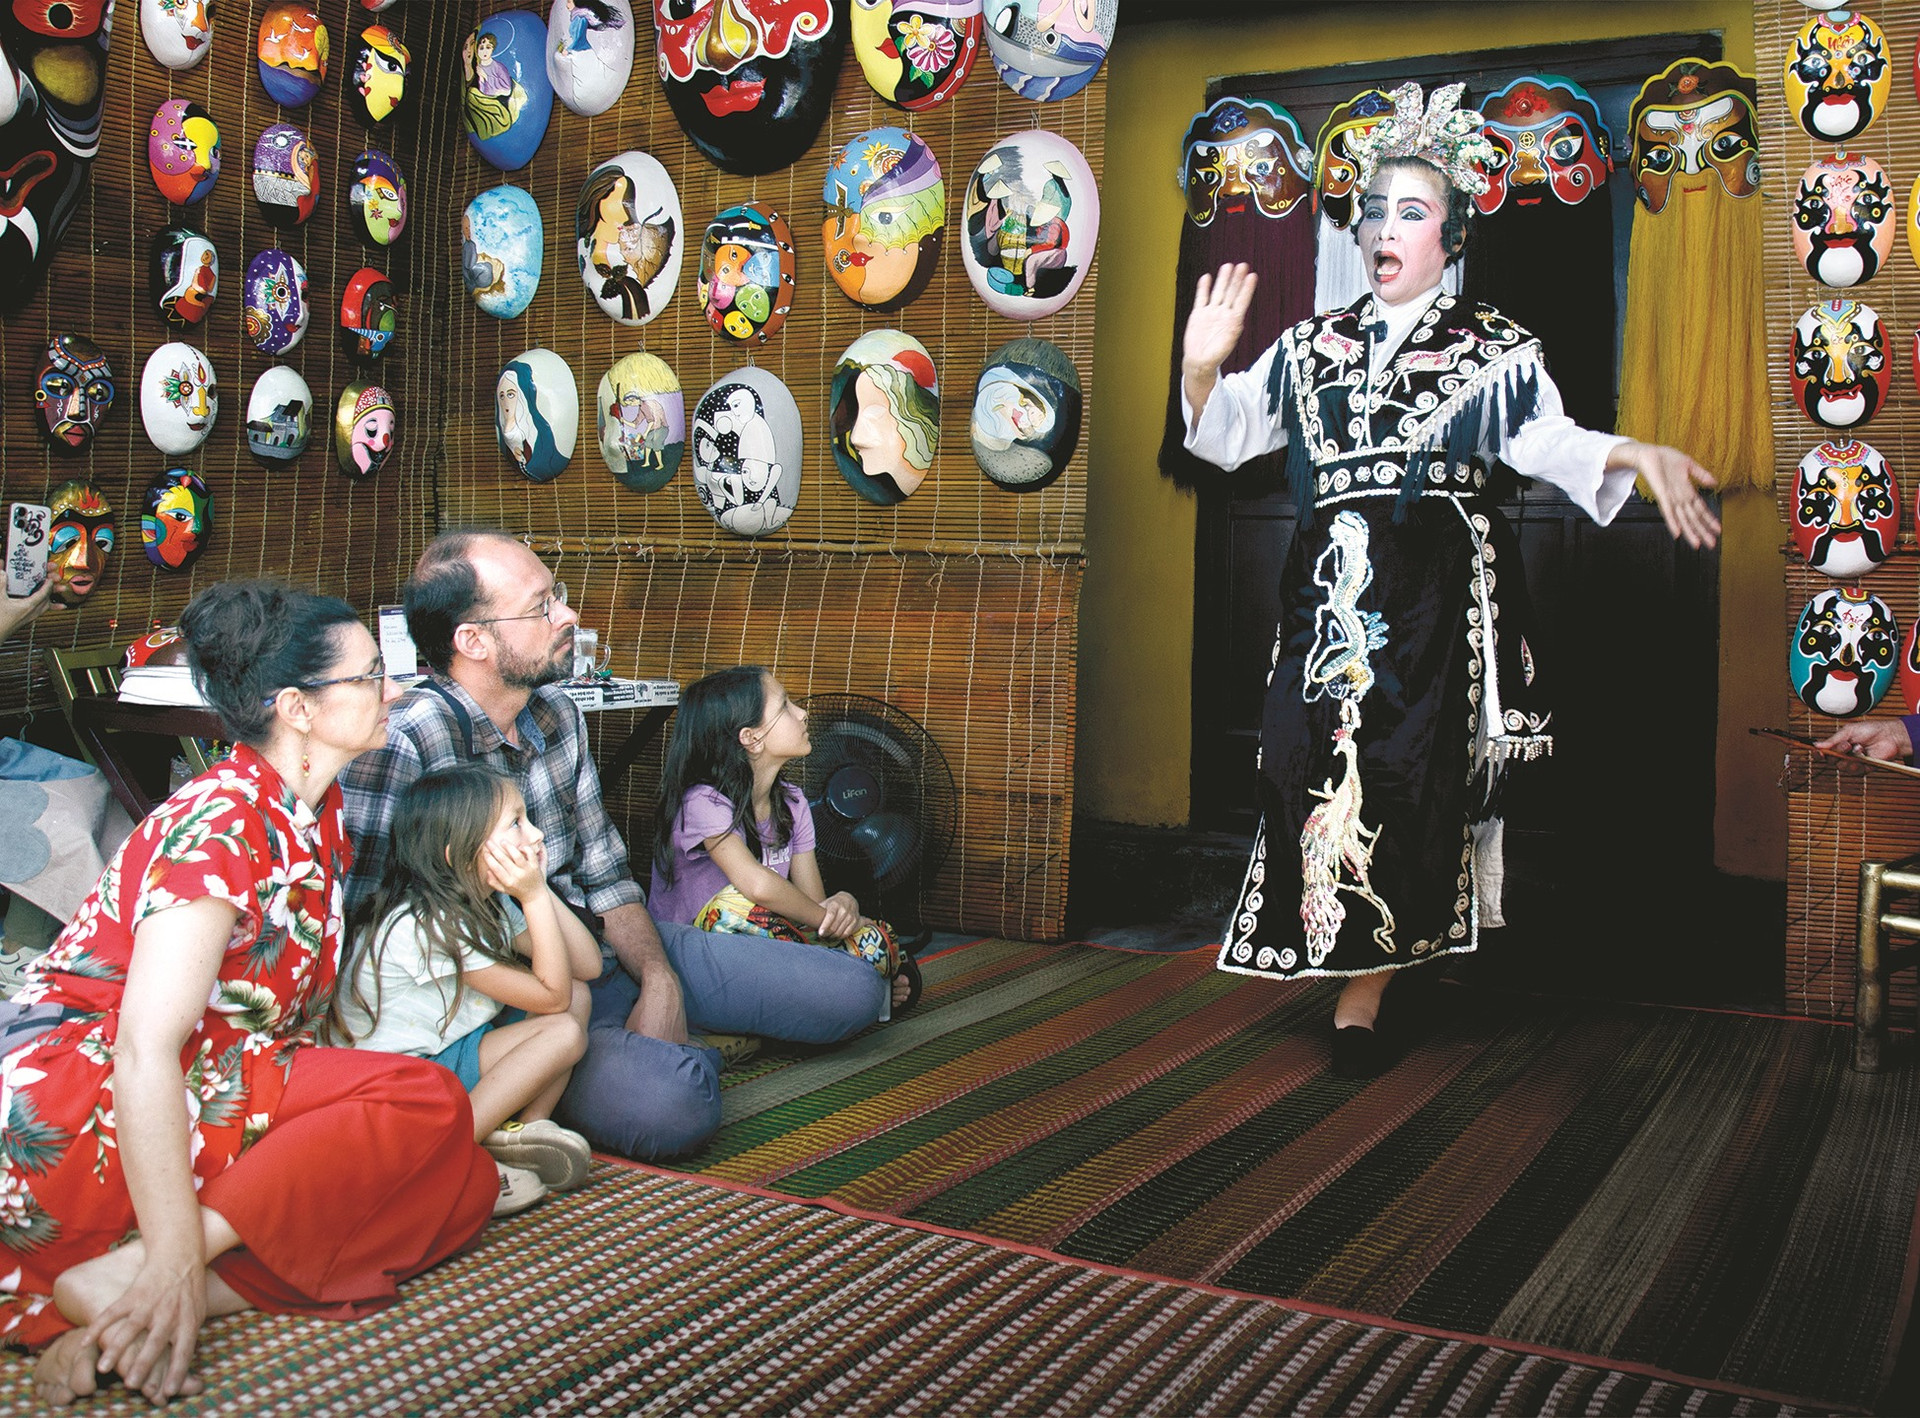 Du khách quốc tế tìm hiểu văn hóa Quảng Nam qua biểu diễn tuồng cổ. Ảnh: LÊ TRỌNG KHANG